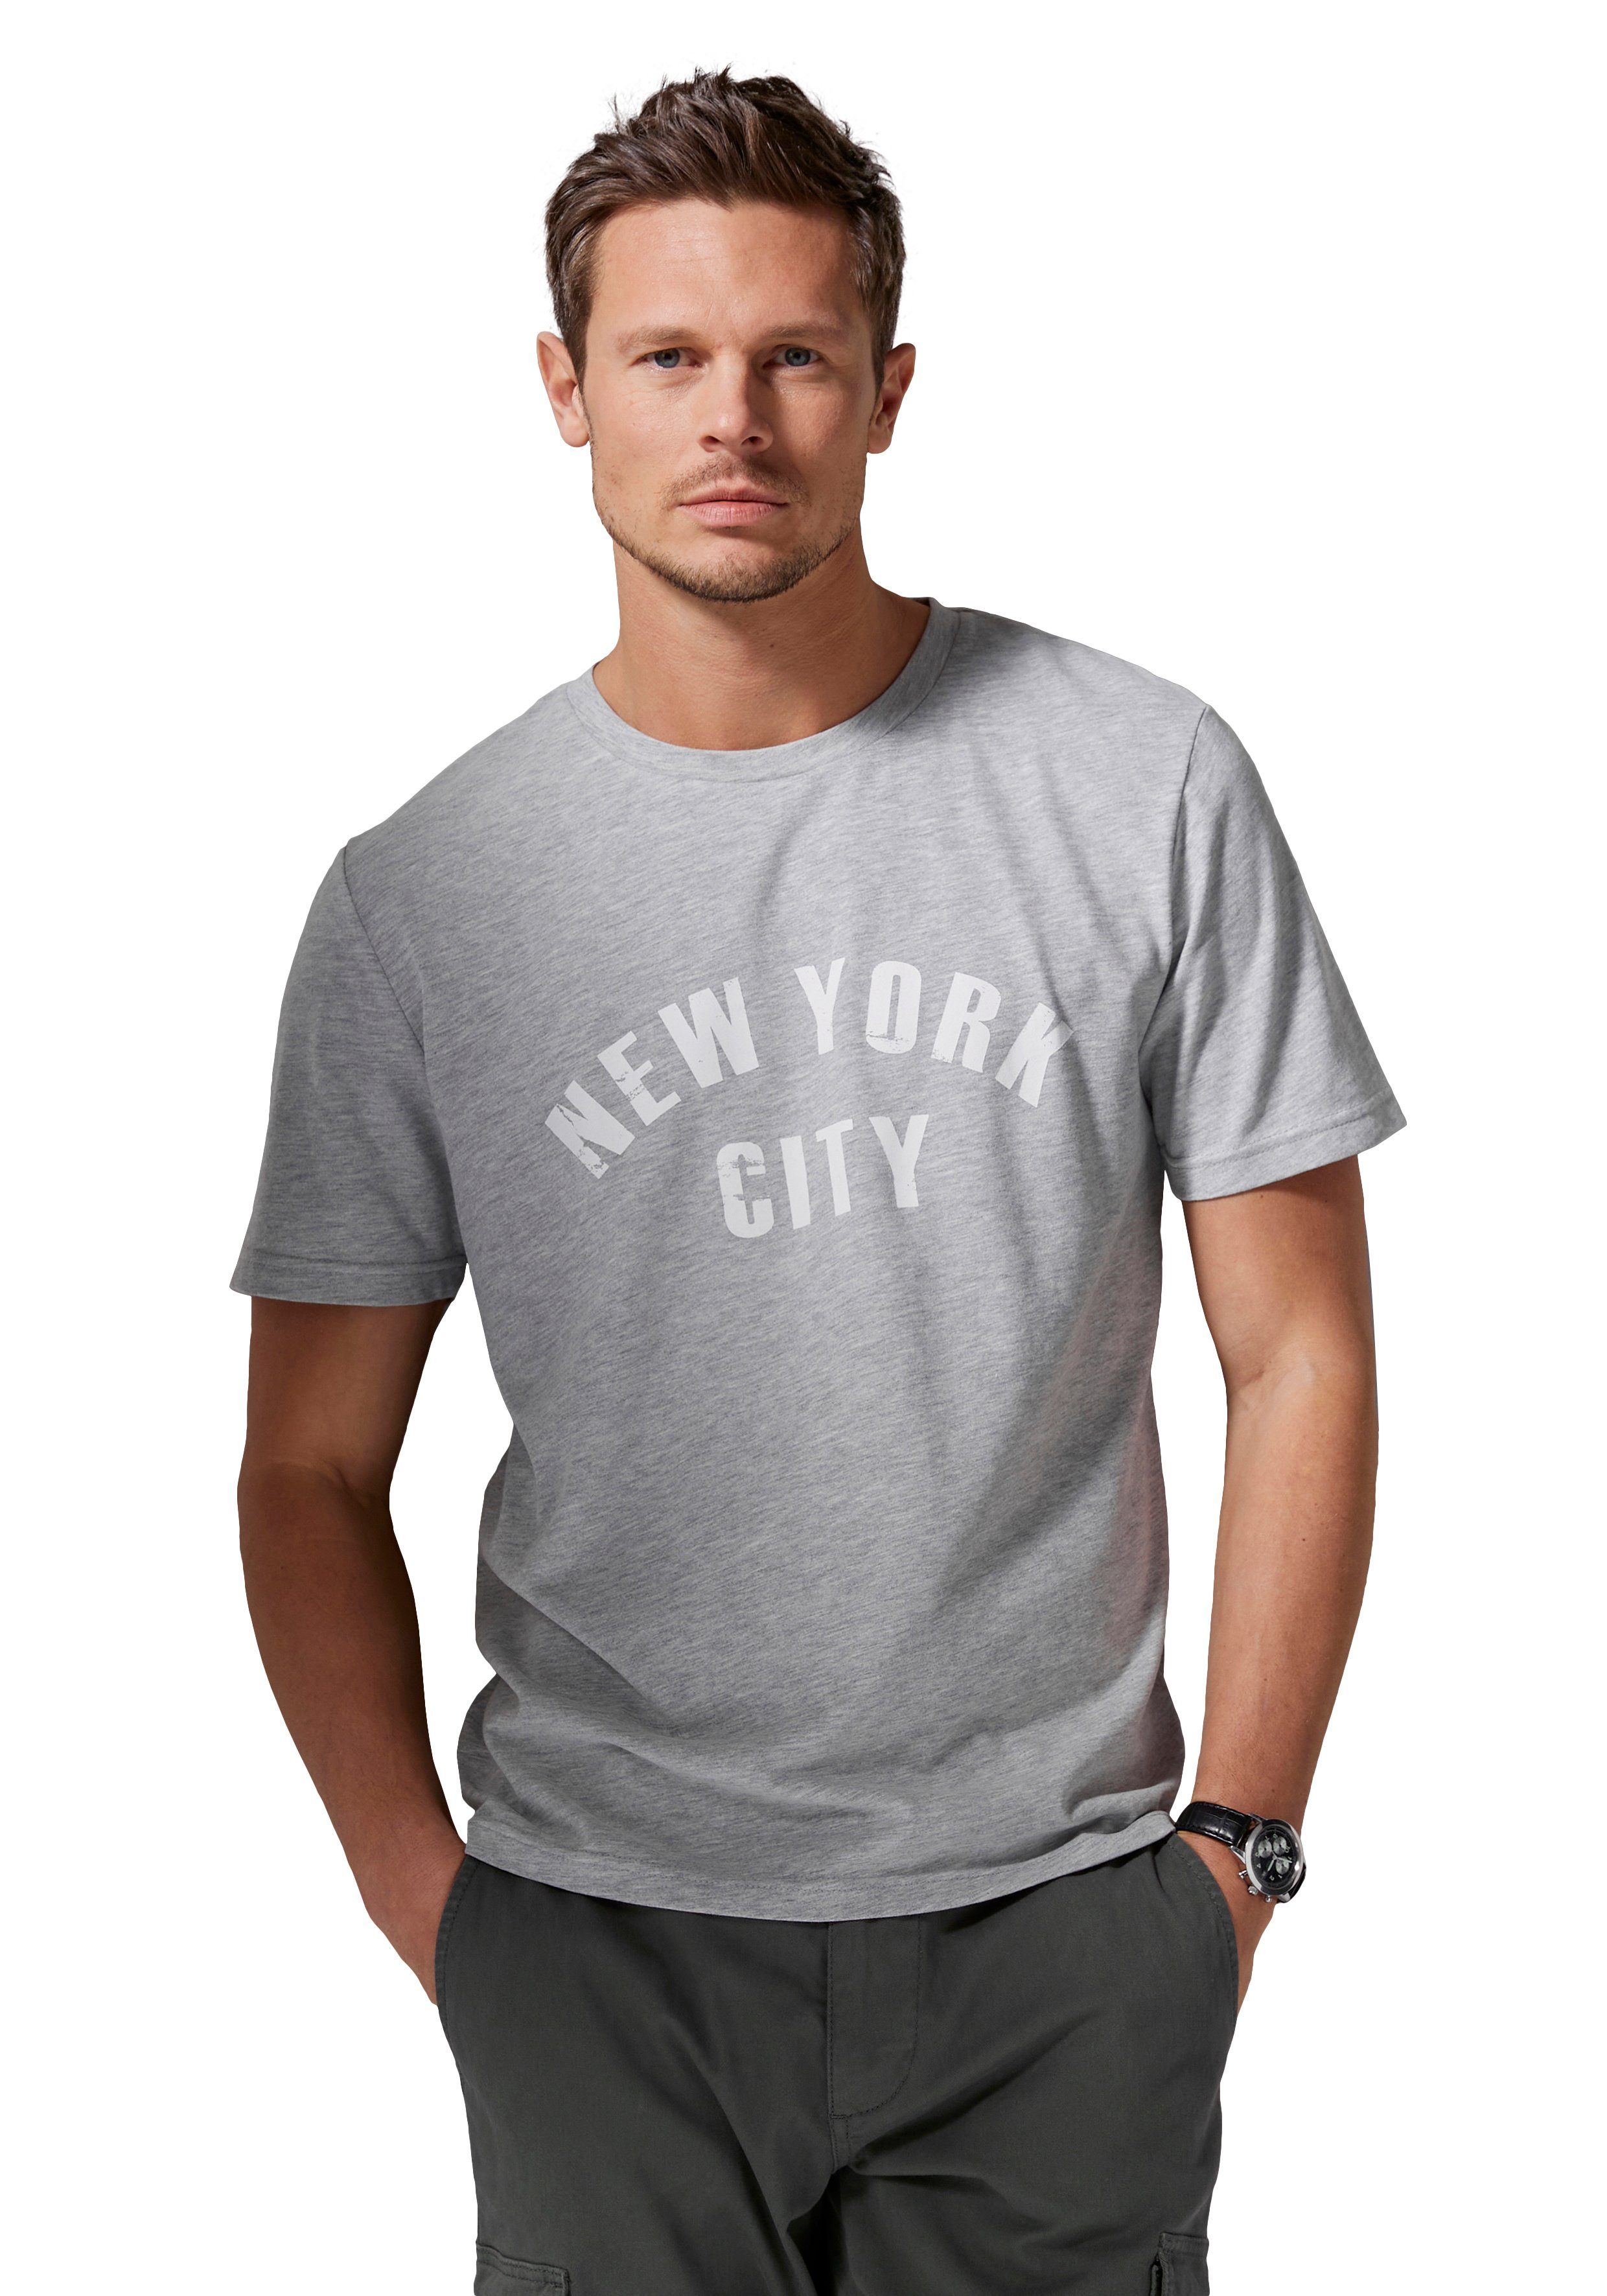 John Devin T-Shirt Freizeitshirt mit Rundhals und Frontprint aus Baumwollmischung